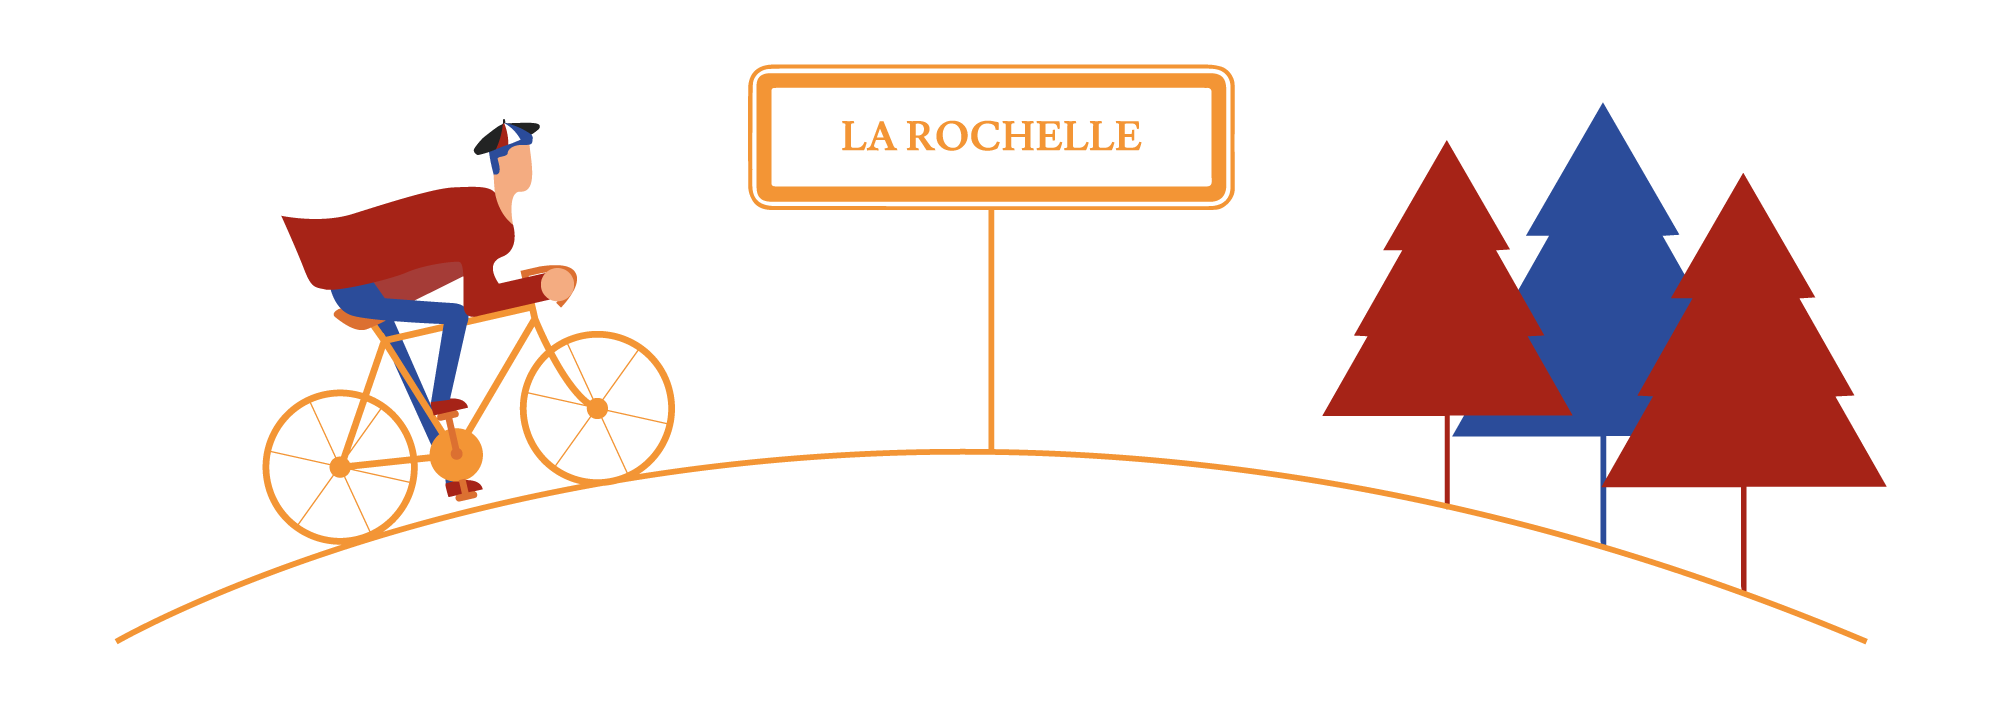 Spécialités de La Rochelle